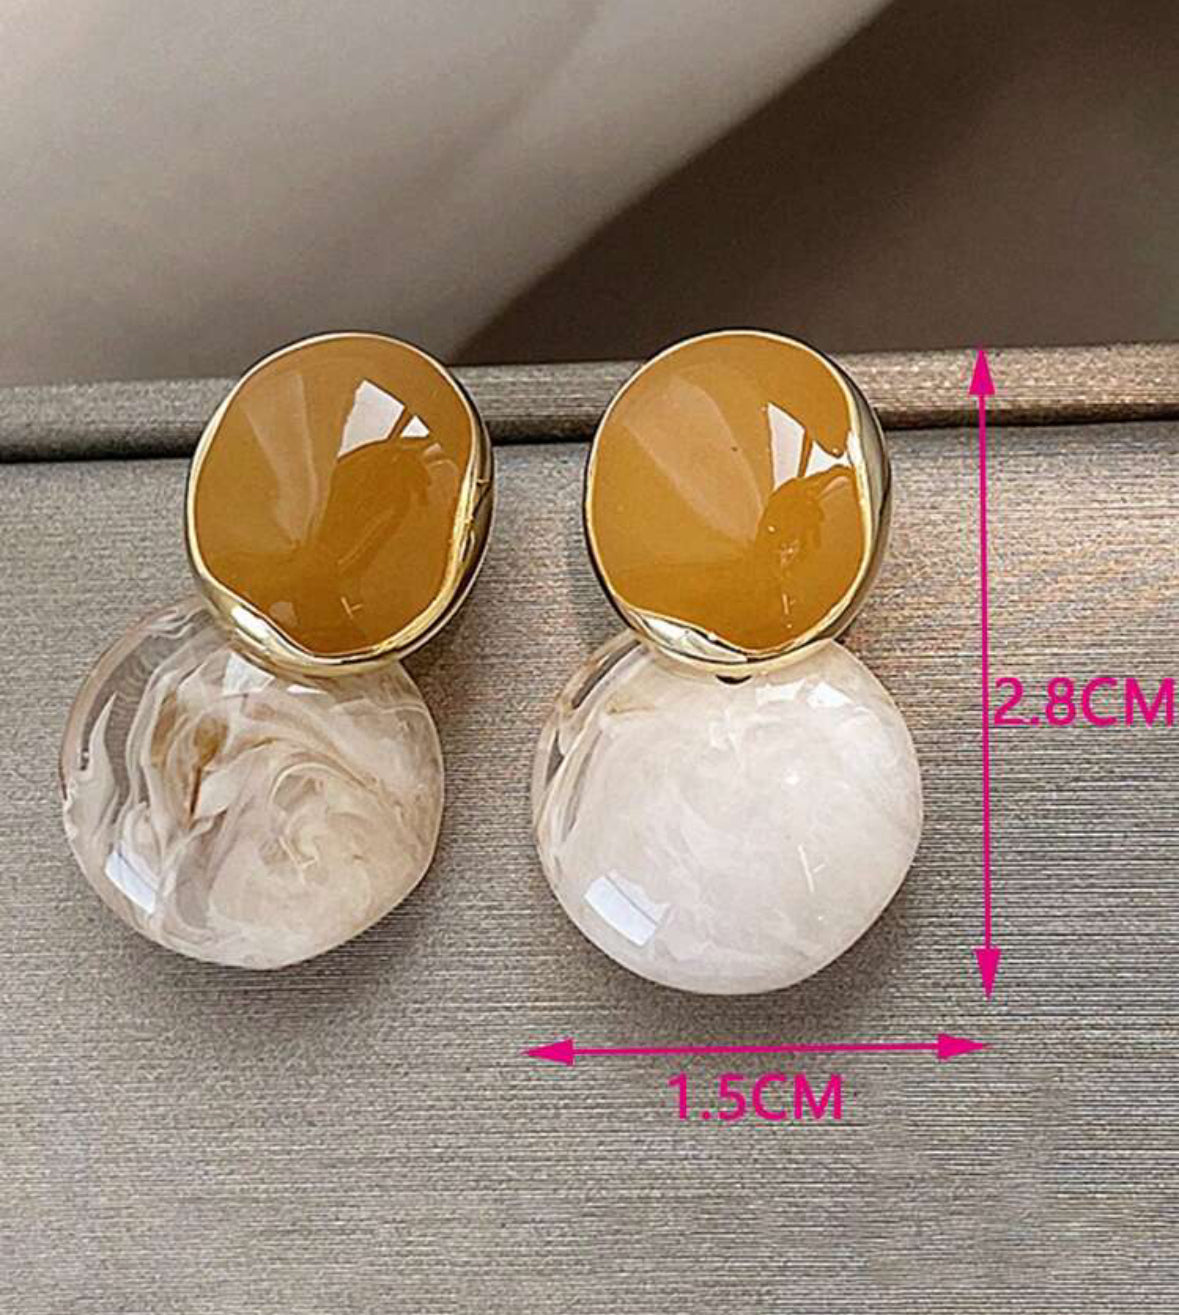 Waterproof beautiful unique earrings